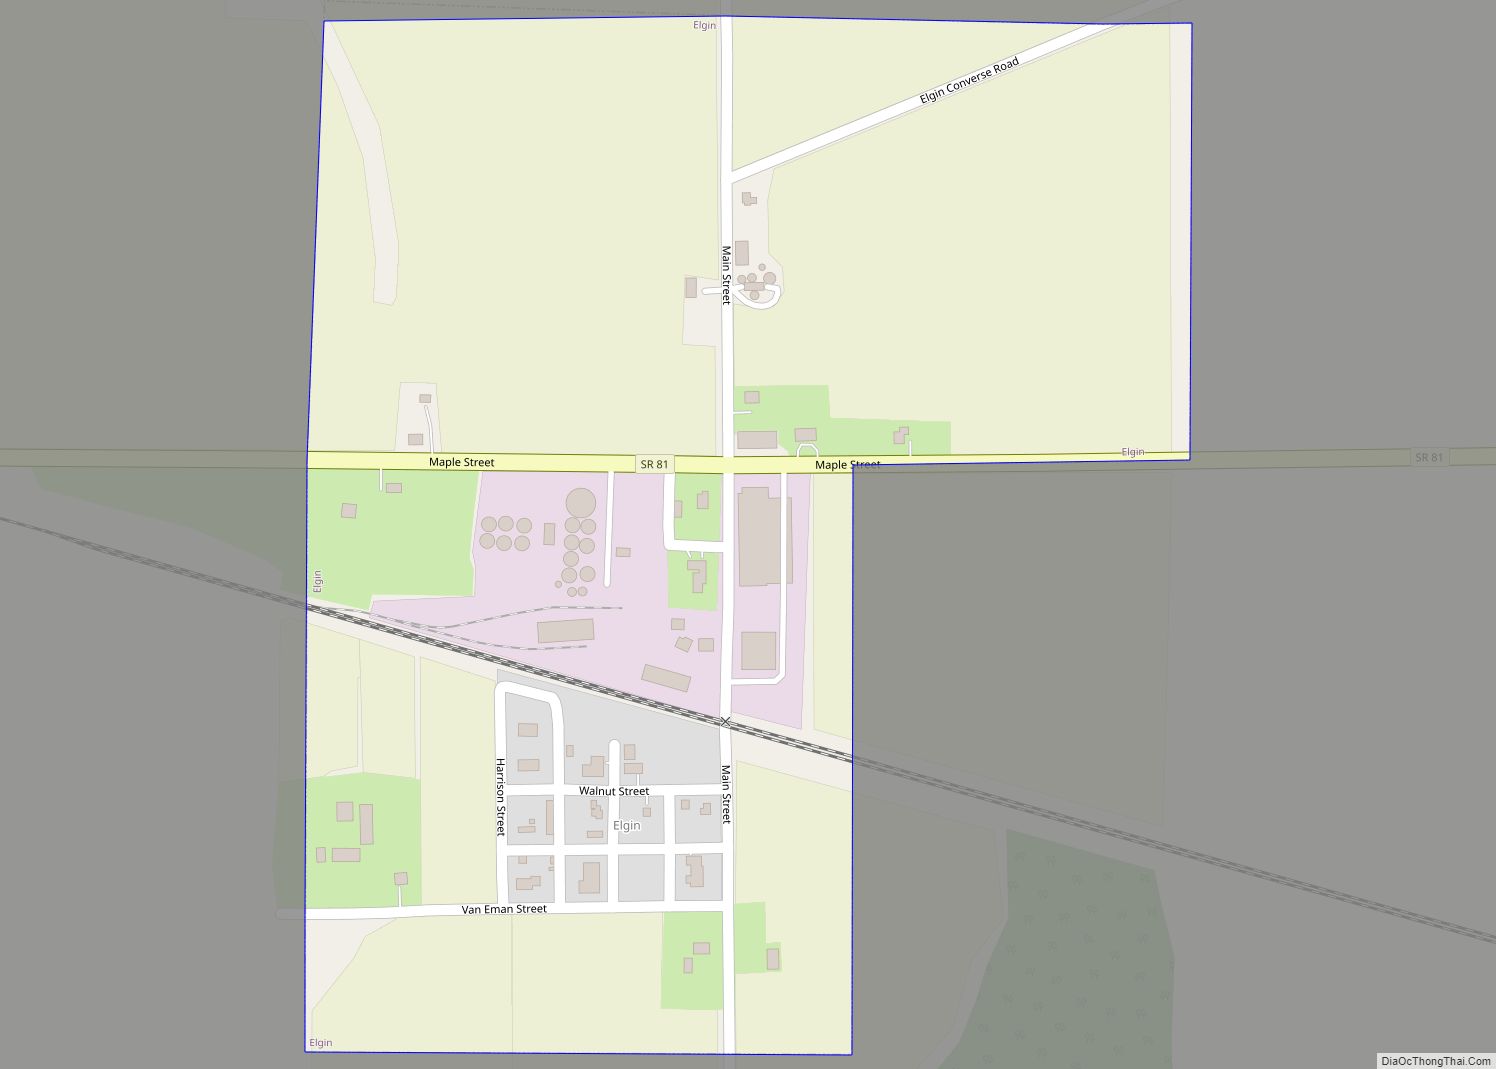 Map of Elgin village, Ohio